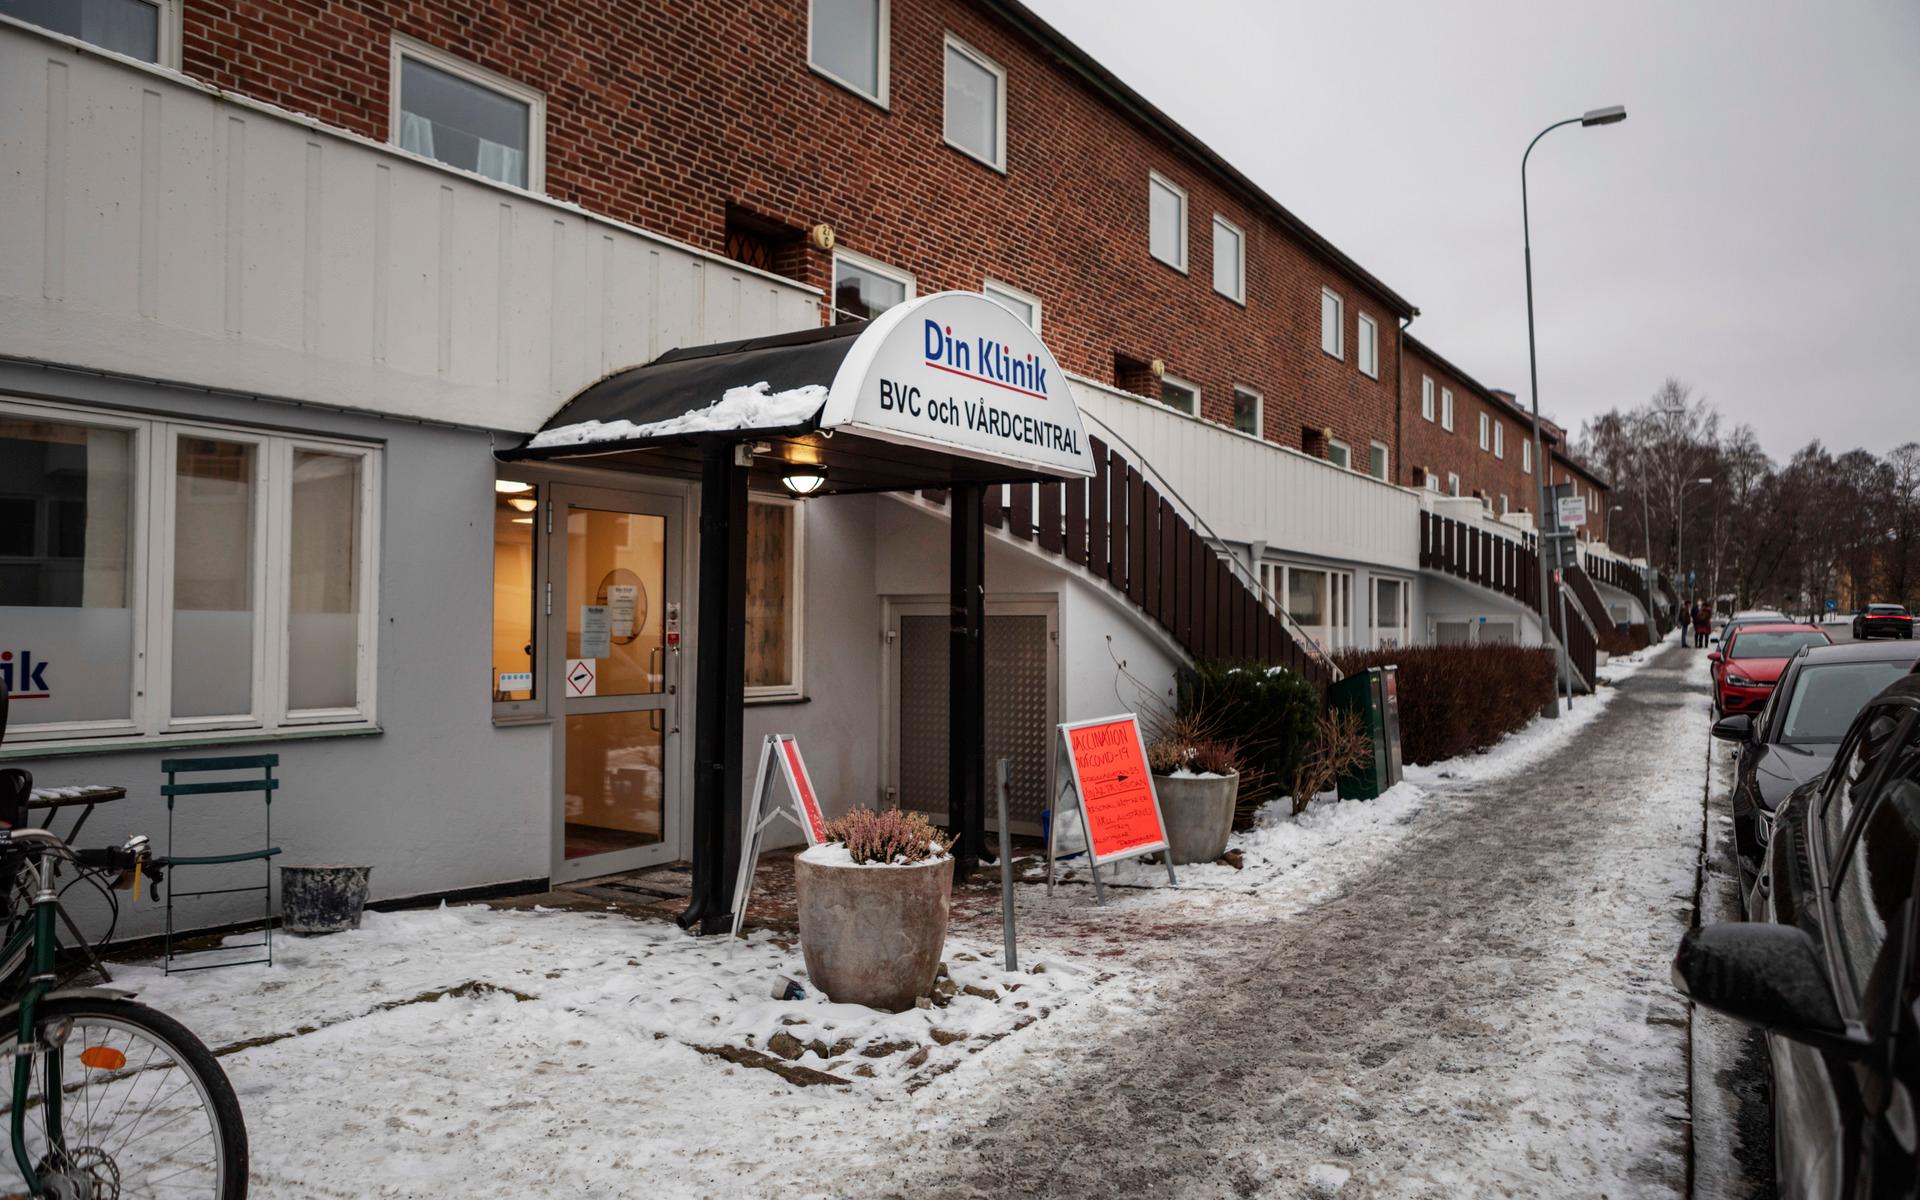 Västra Götalandsregionen har lämnat in en polisanmälan mot Din Kliniks dubbelregistrerade vaccinationer: ”Eftersom det rör sig om betydande belopp känns det rimligt att polisanmäla det så att det kan utredas i laga ordning, om vi säger att det här kan ha varit brottsligt”, säger Magnus Kronvall, ansvarig tjänsteperson för Göteborgs hälso- och sjukvårdsnämnd.